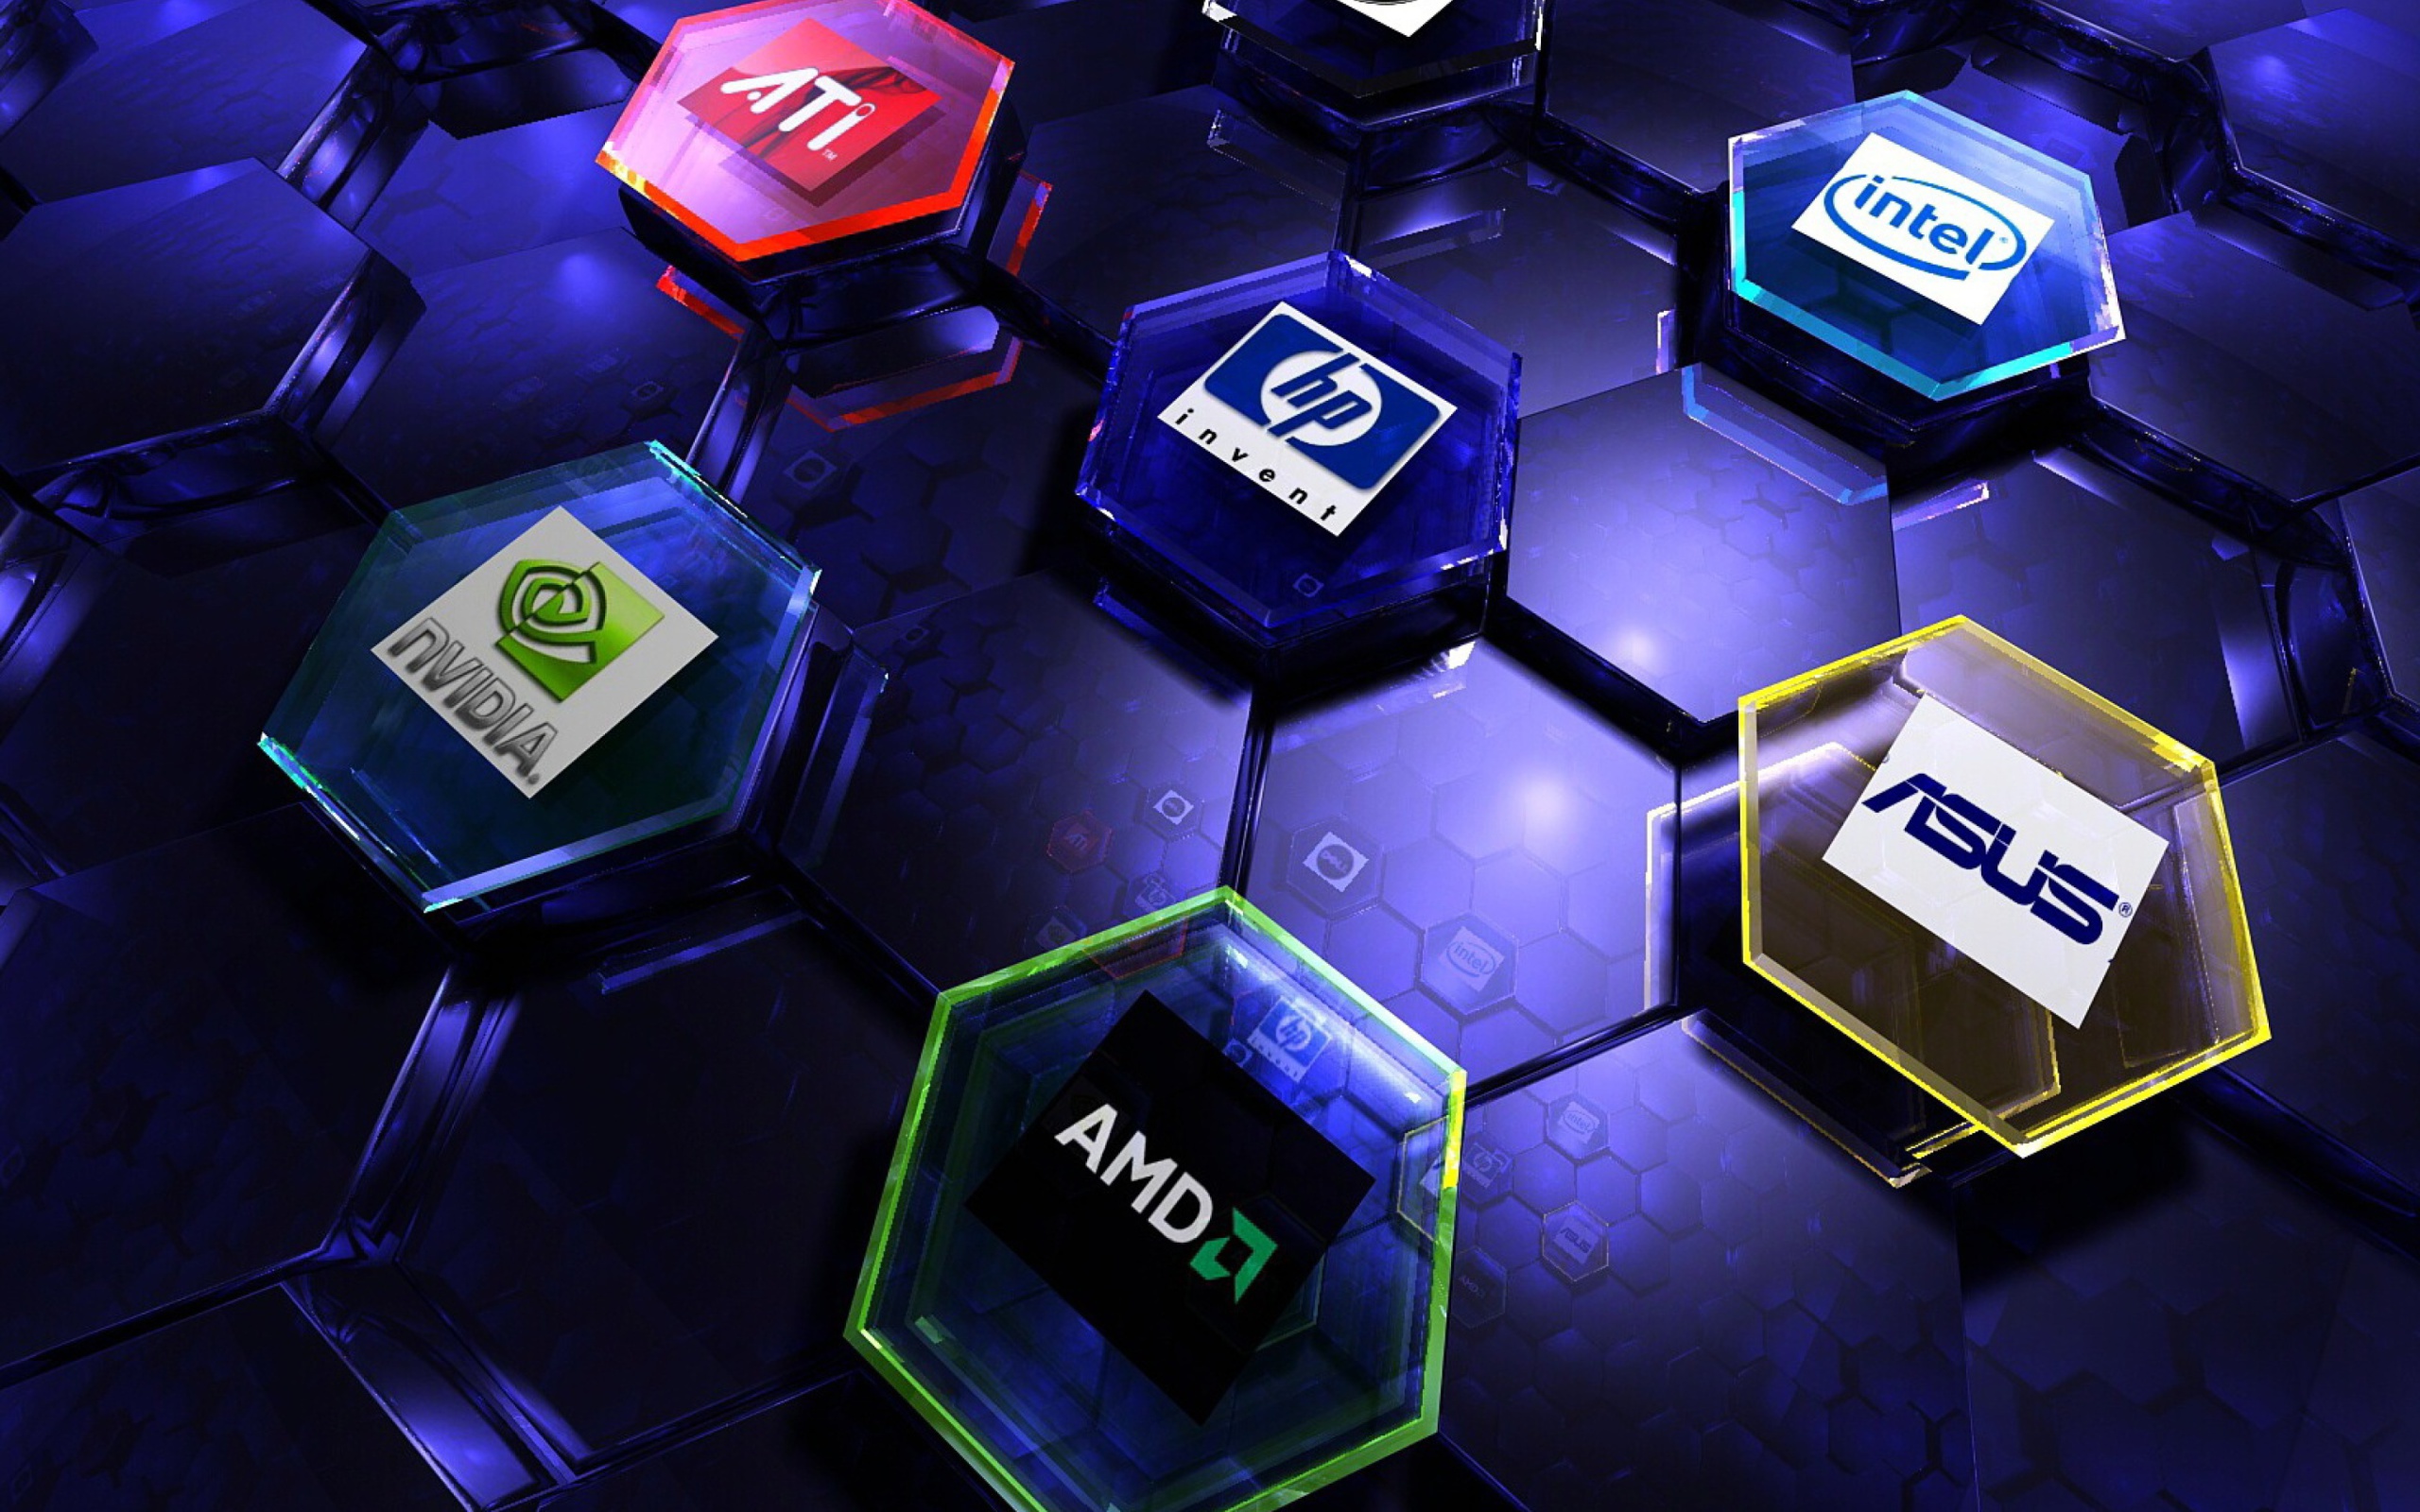 Das Hi-Tech Logos: AMD, HP, Ati, Nvidia, Asus Wallpaper 2560x1600